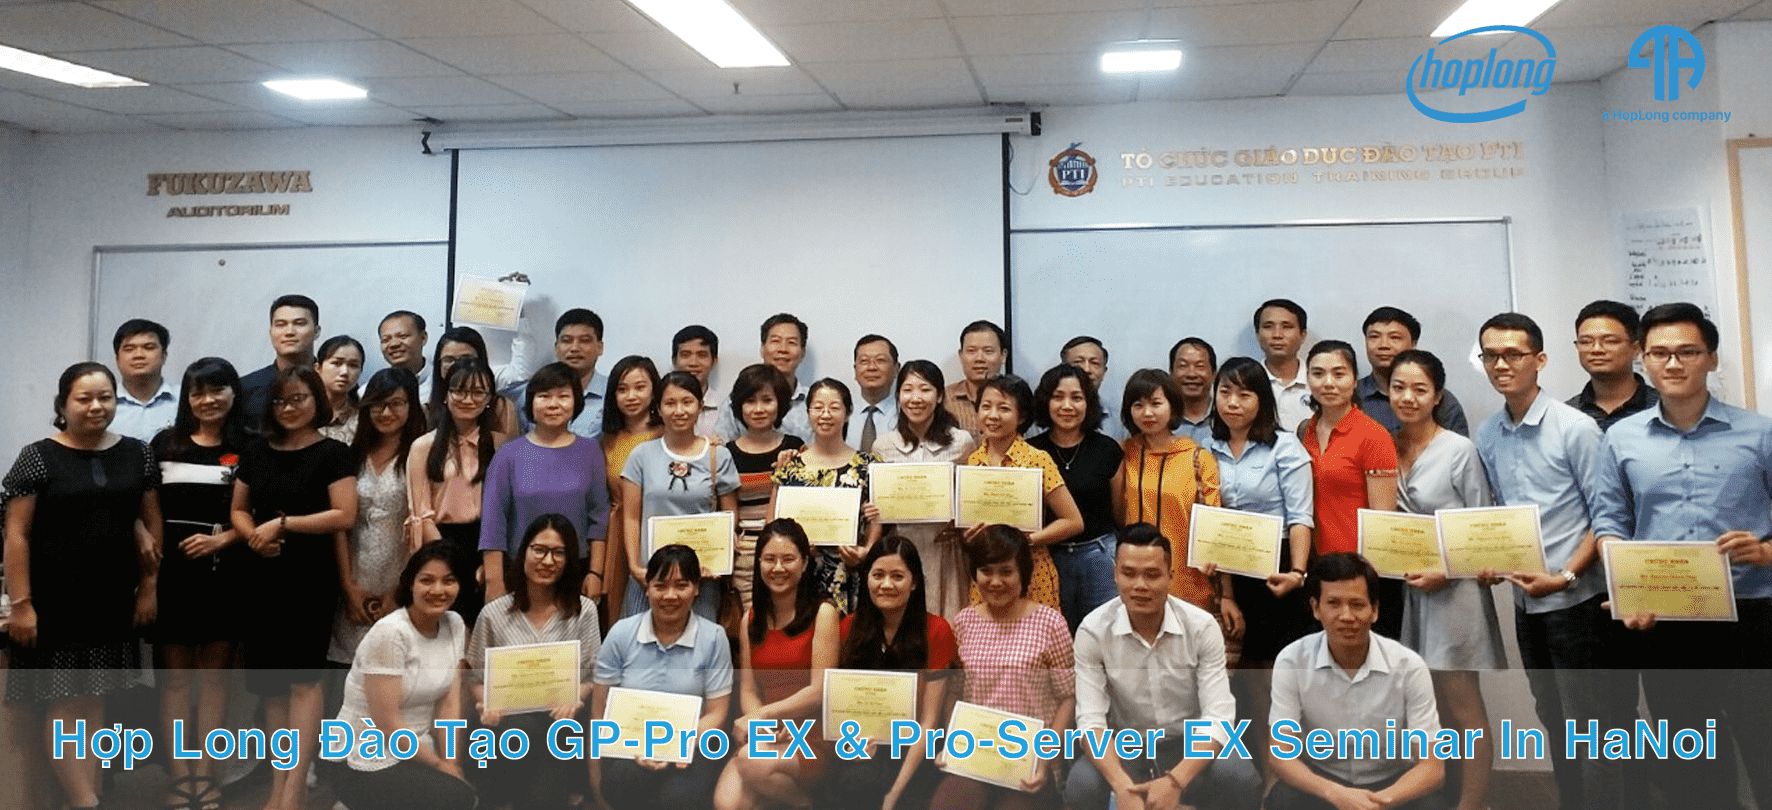 Hợp Long Đào Tạo GP-Pro EX & Pro-Server EX Seminar In HaNoi